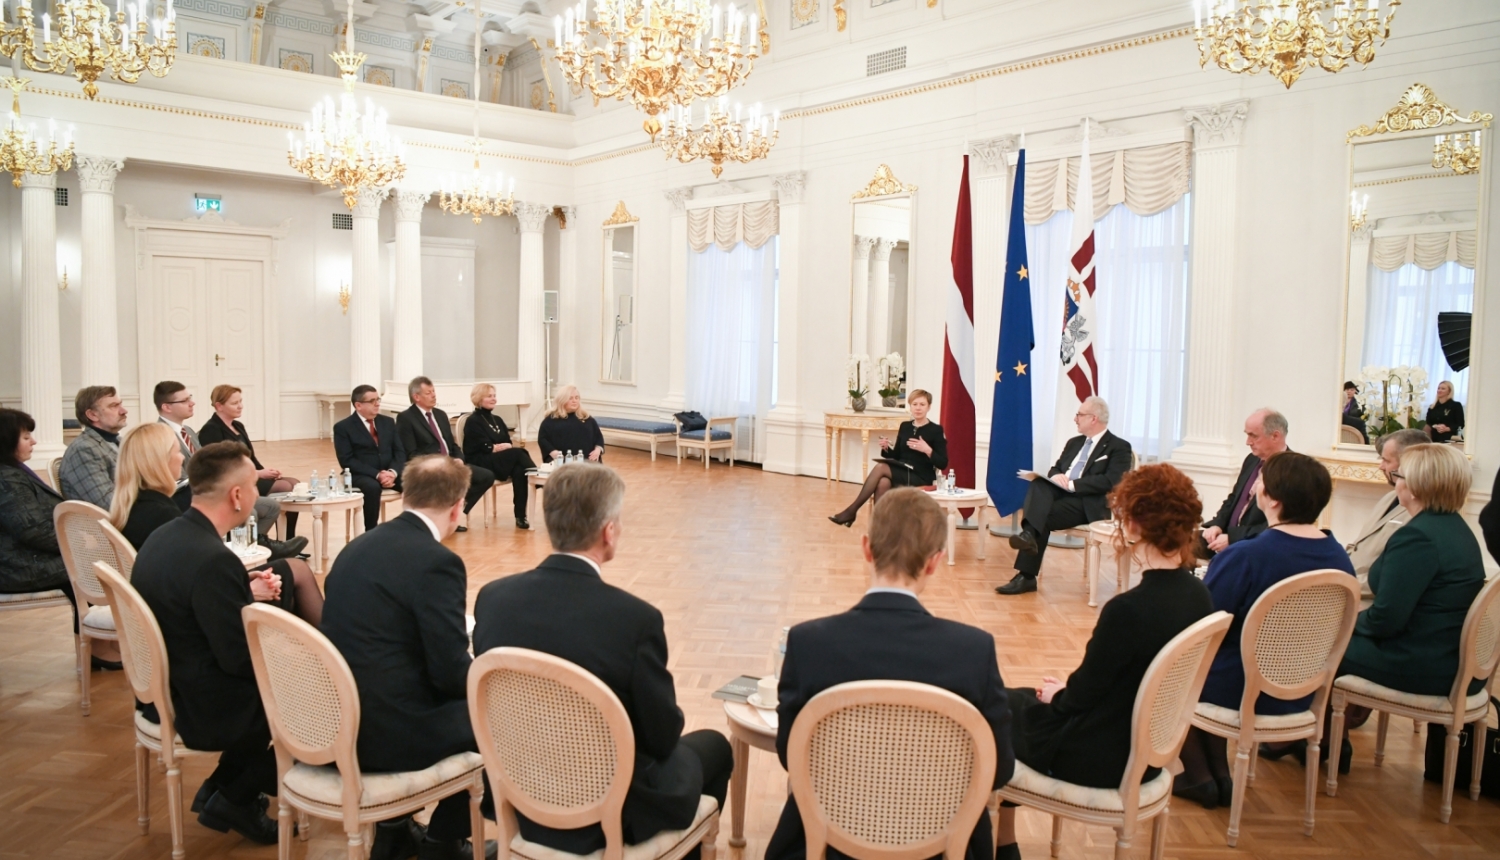 Sarunas dalībnieki Rīgas pils Baltajā zālē